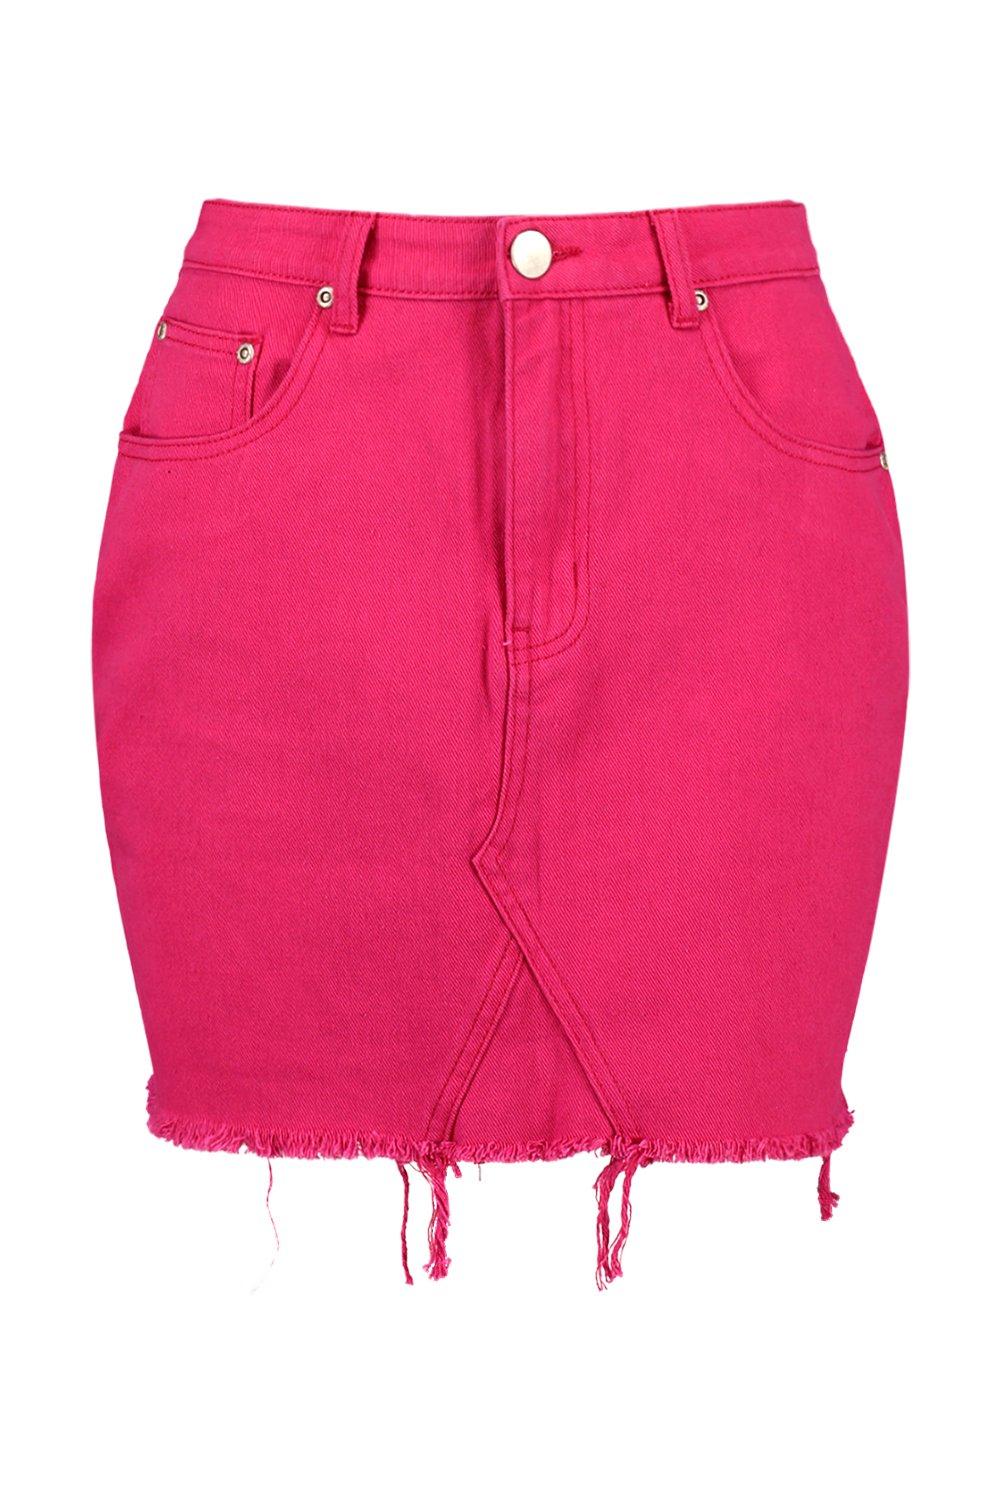 hot pink jean skirt